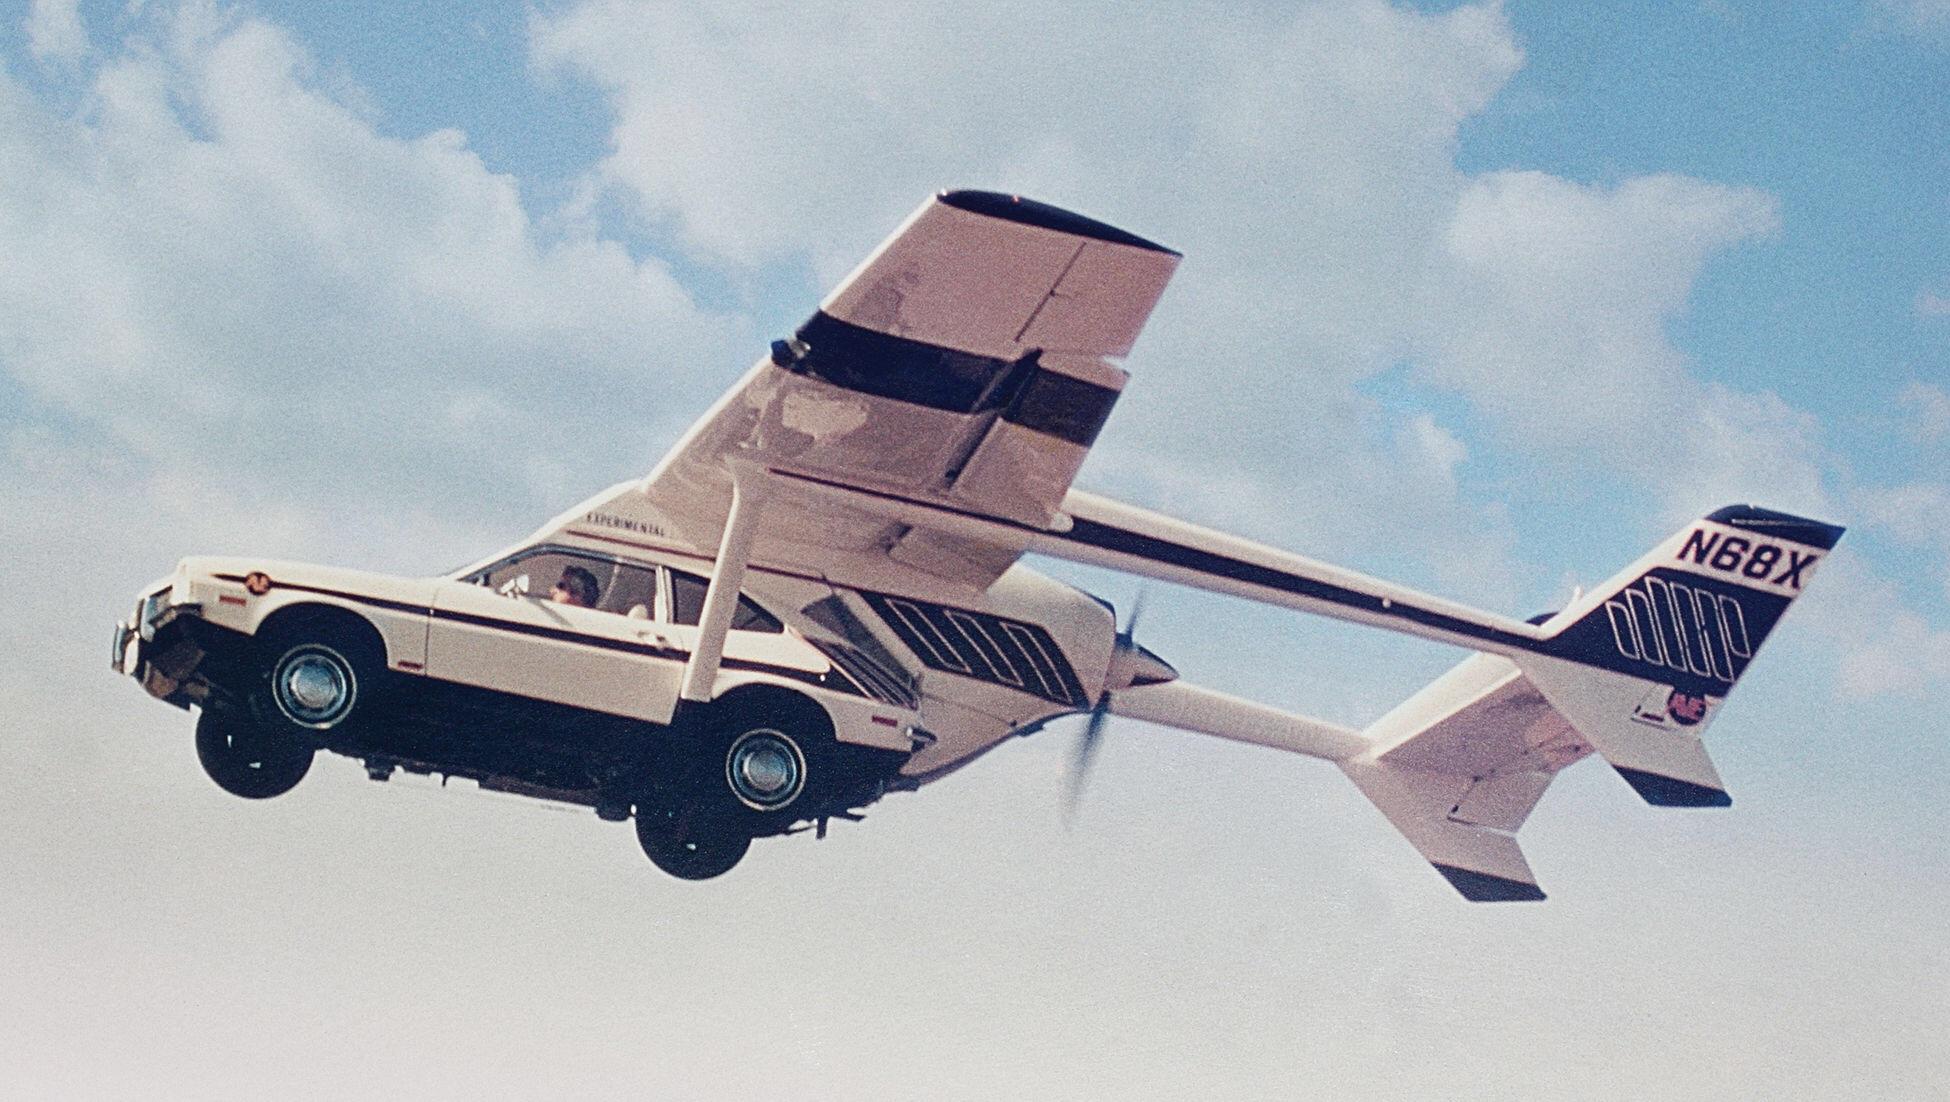 Közel ötven éve emelkedett magasba az első igazi repülő autó